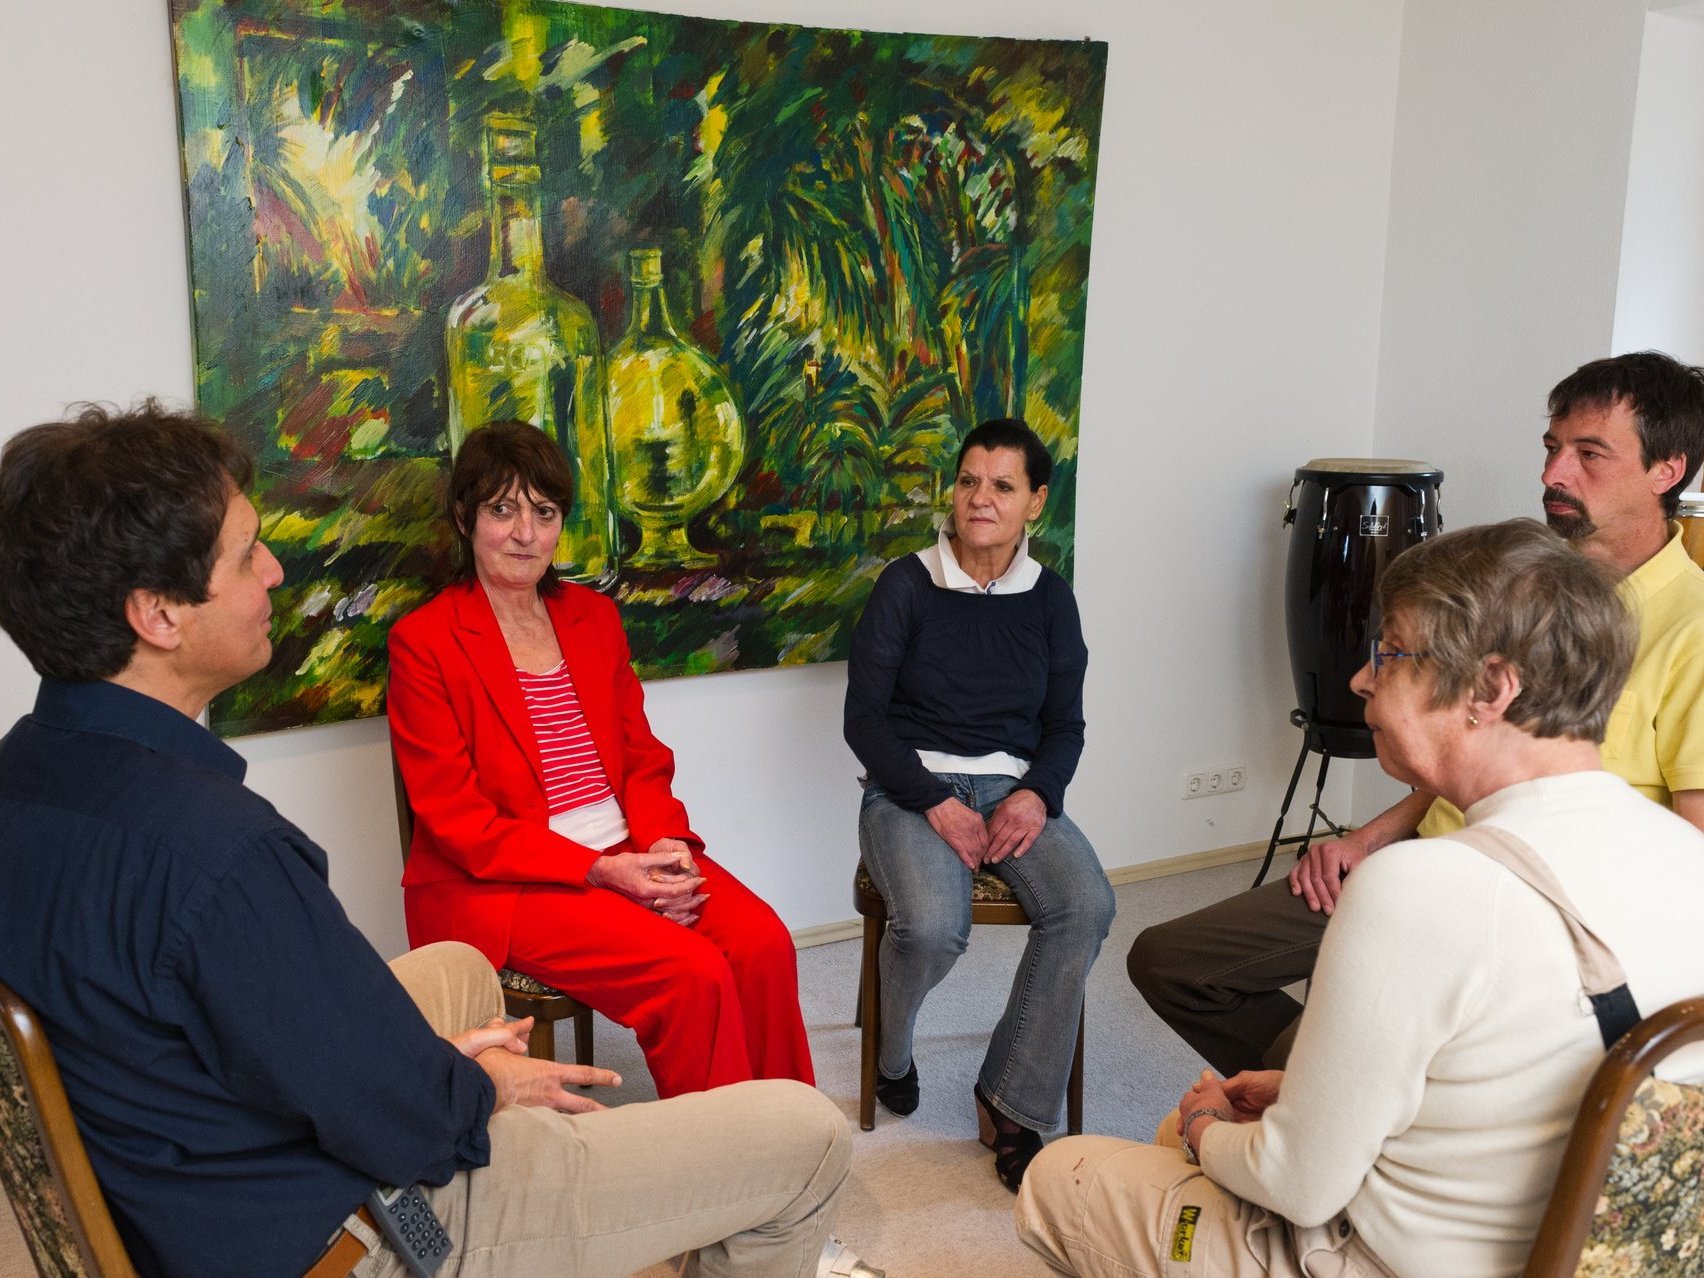 Fünf Menschen sitzen im Kreis auf Stühlen einander zugewandt. Die Atmosphäre ist konzentriert und ernst. Im Hintergrund hängt ein Gemälde eines Dschungels mit zwei Glasflaschen.